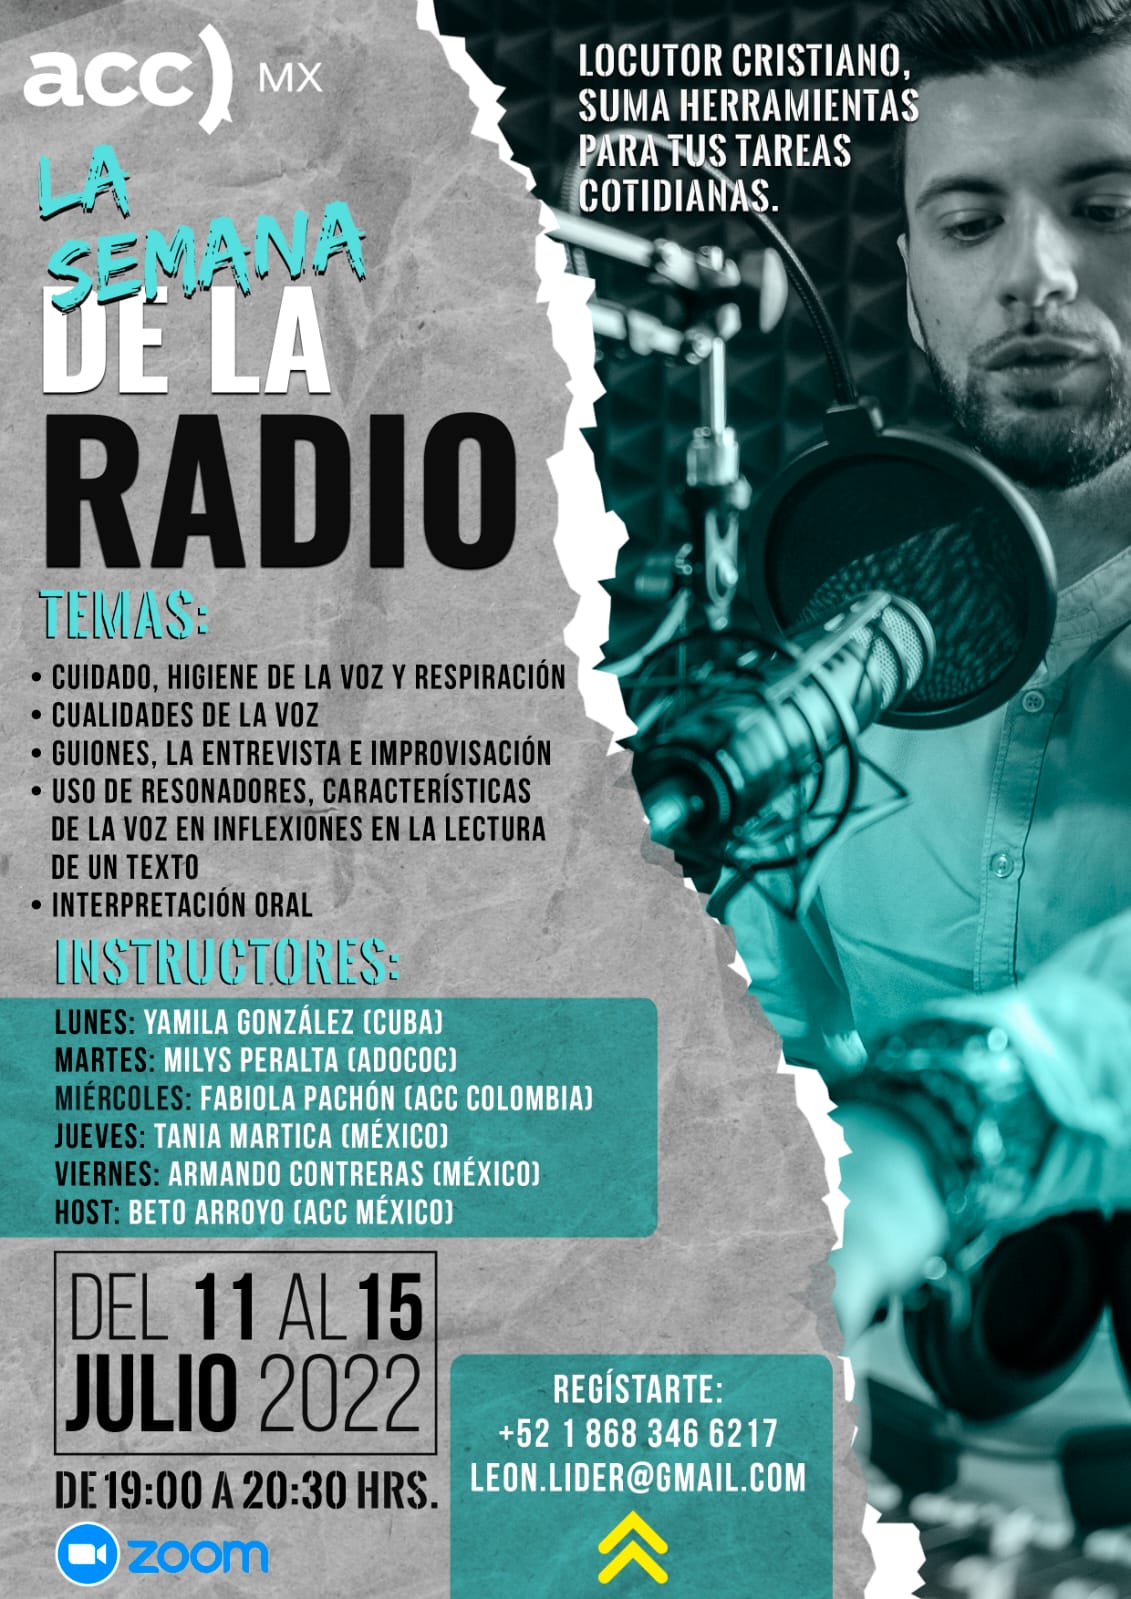 Inicia la Semana de la Radio Cristiana con participaciones de Cuba, República Dominicana, Colombia y México